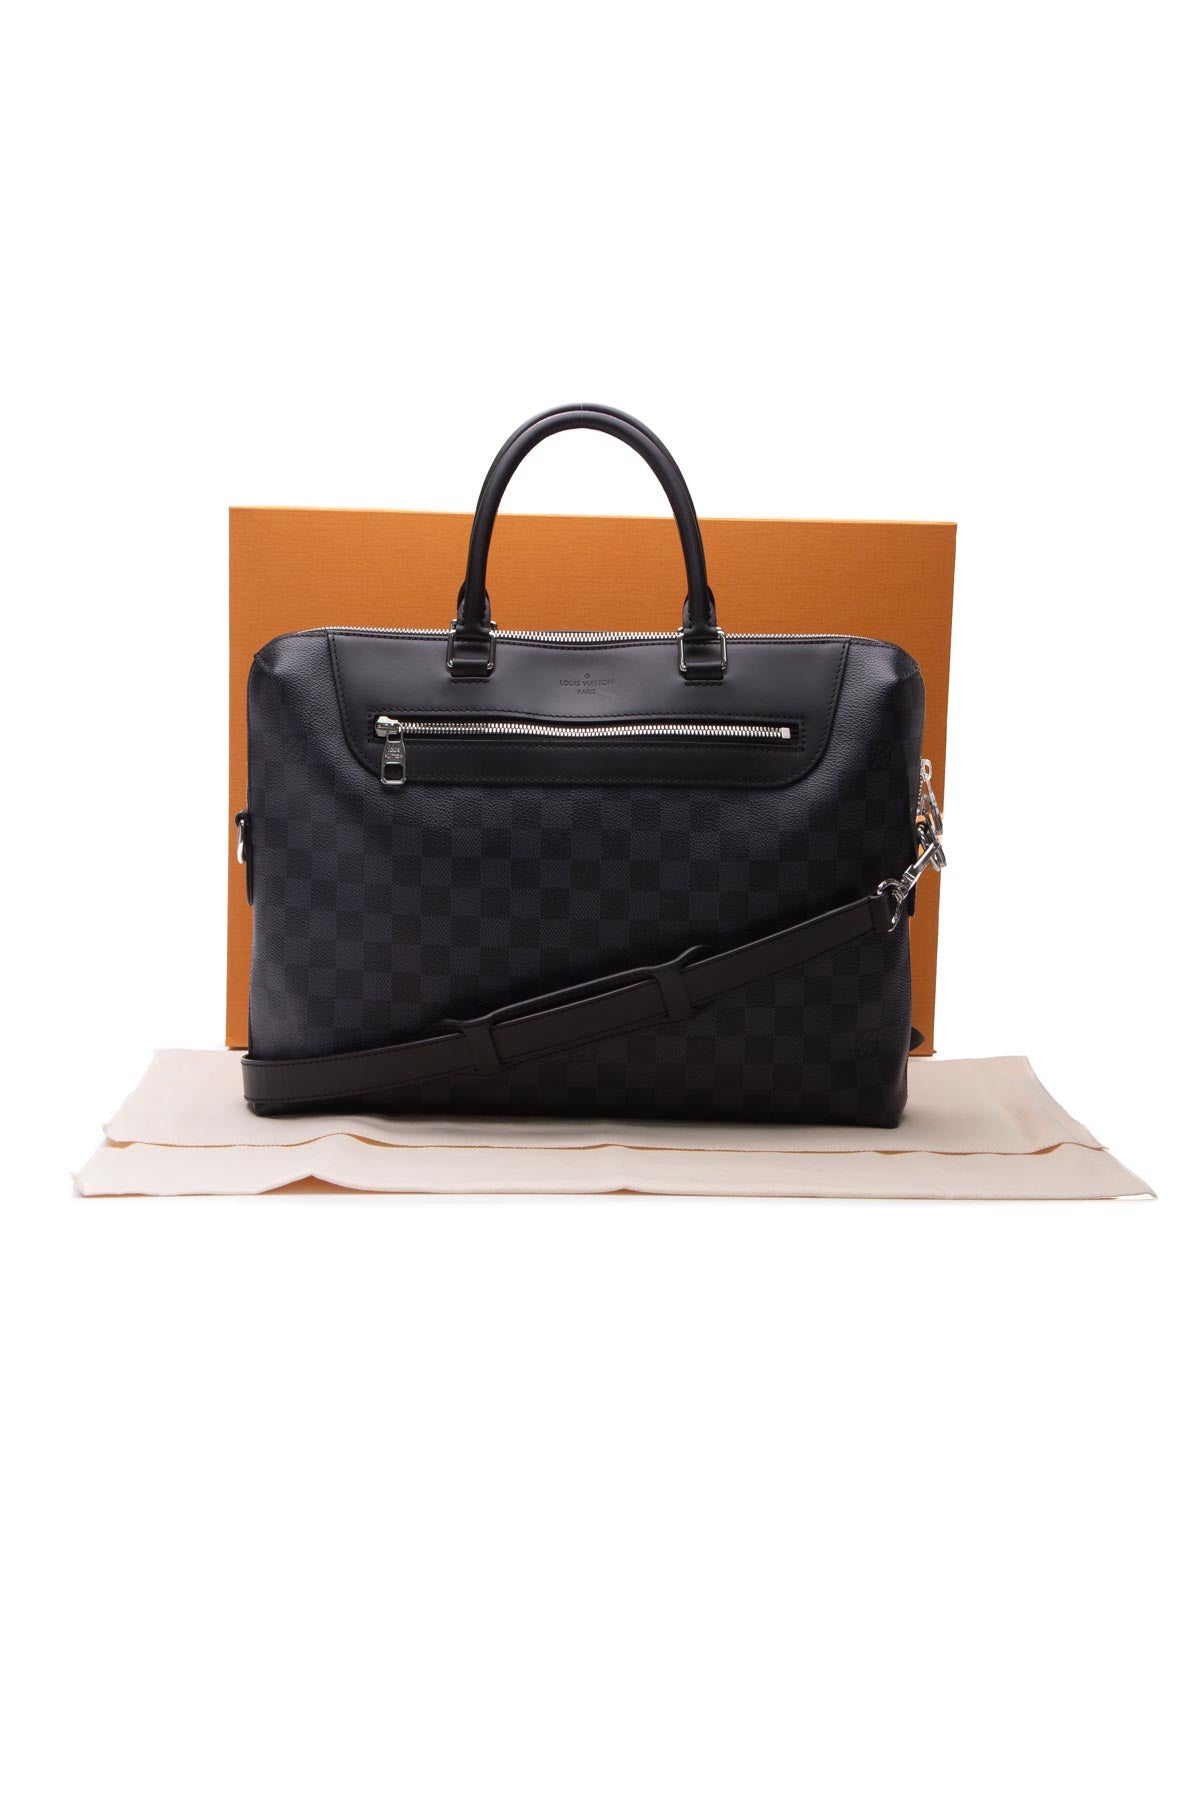 Men's Lous Vuitton Bag Porte Documents Jour in Damier graphite